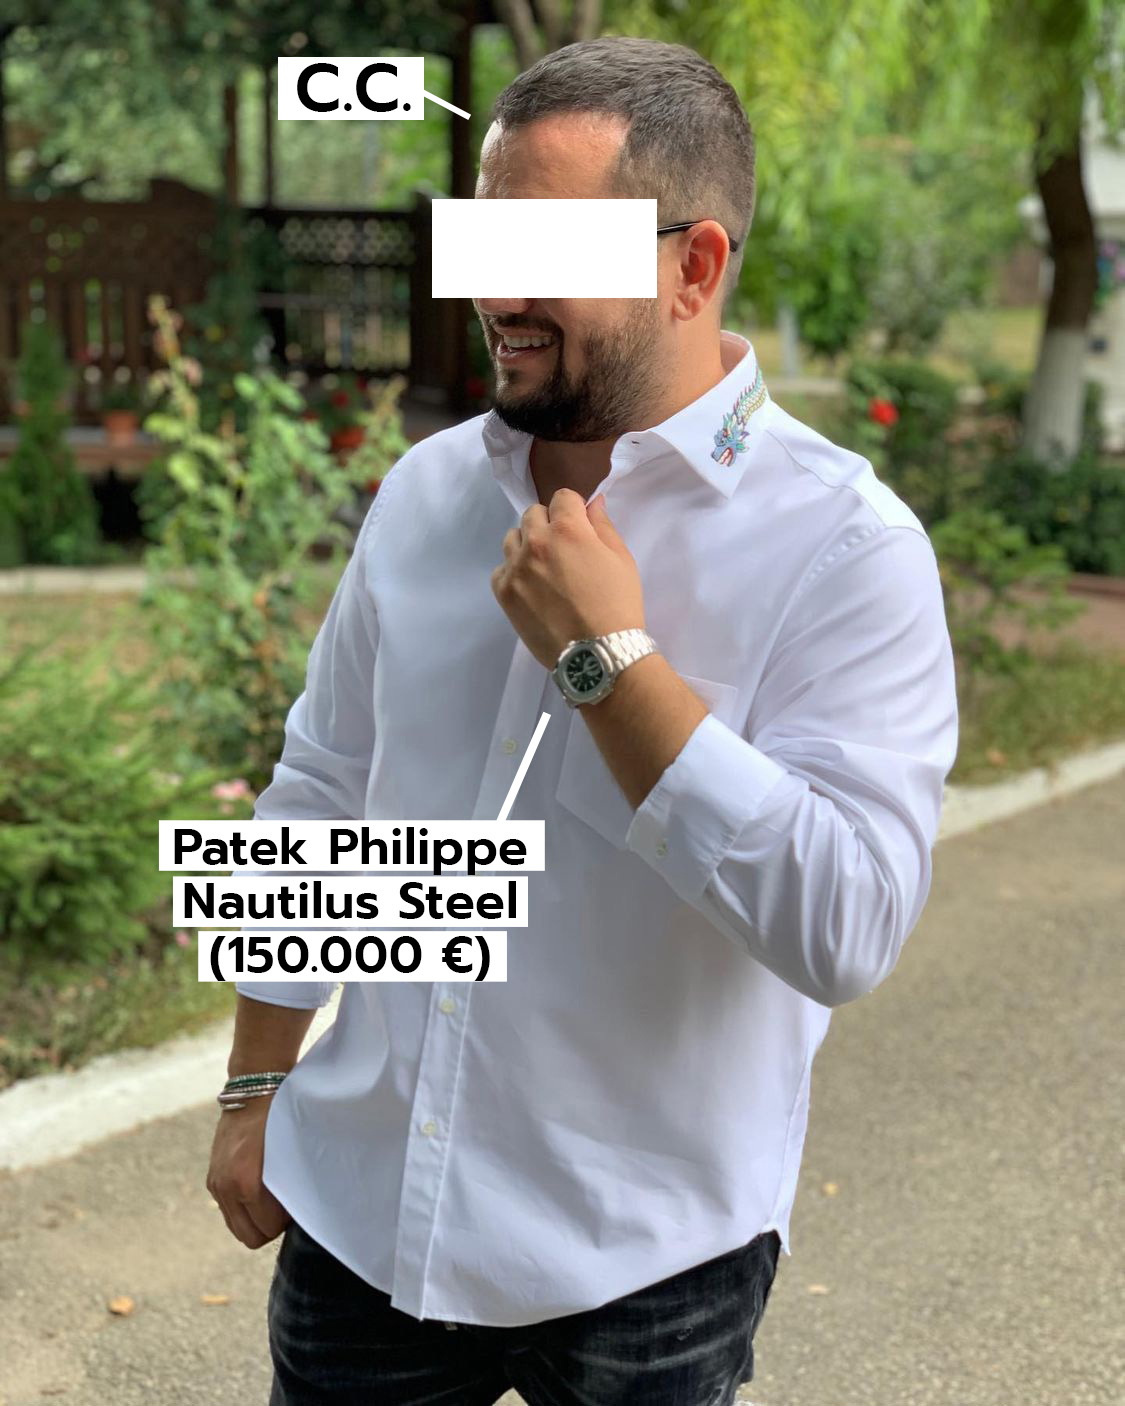 C.C., fratele lui T.C. poartă, în această poză, un Patek Philippe Nautilus Steel de 150.000 de euro (Foto: Instagram)